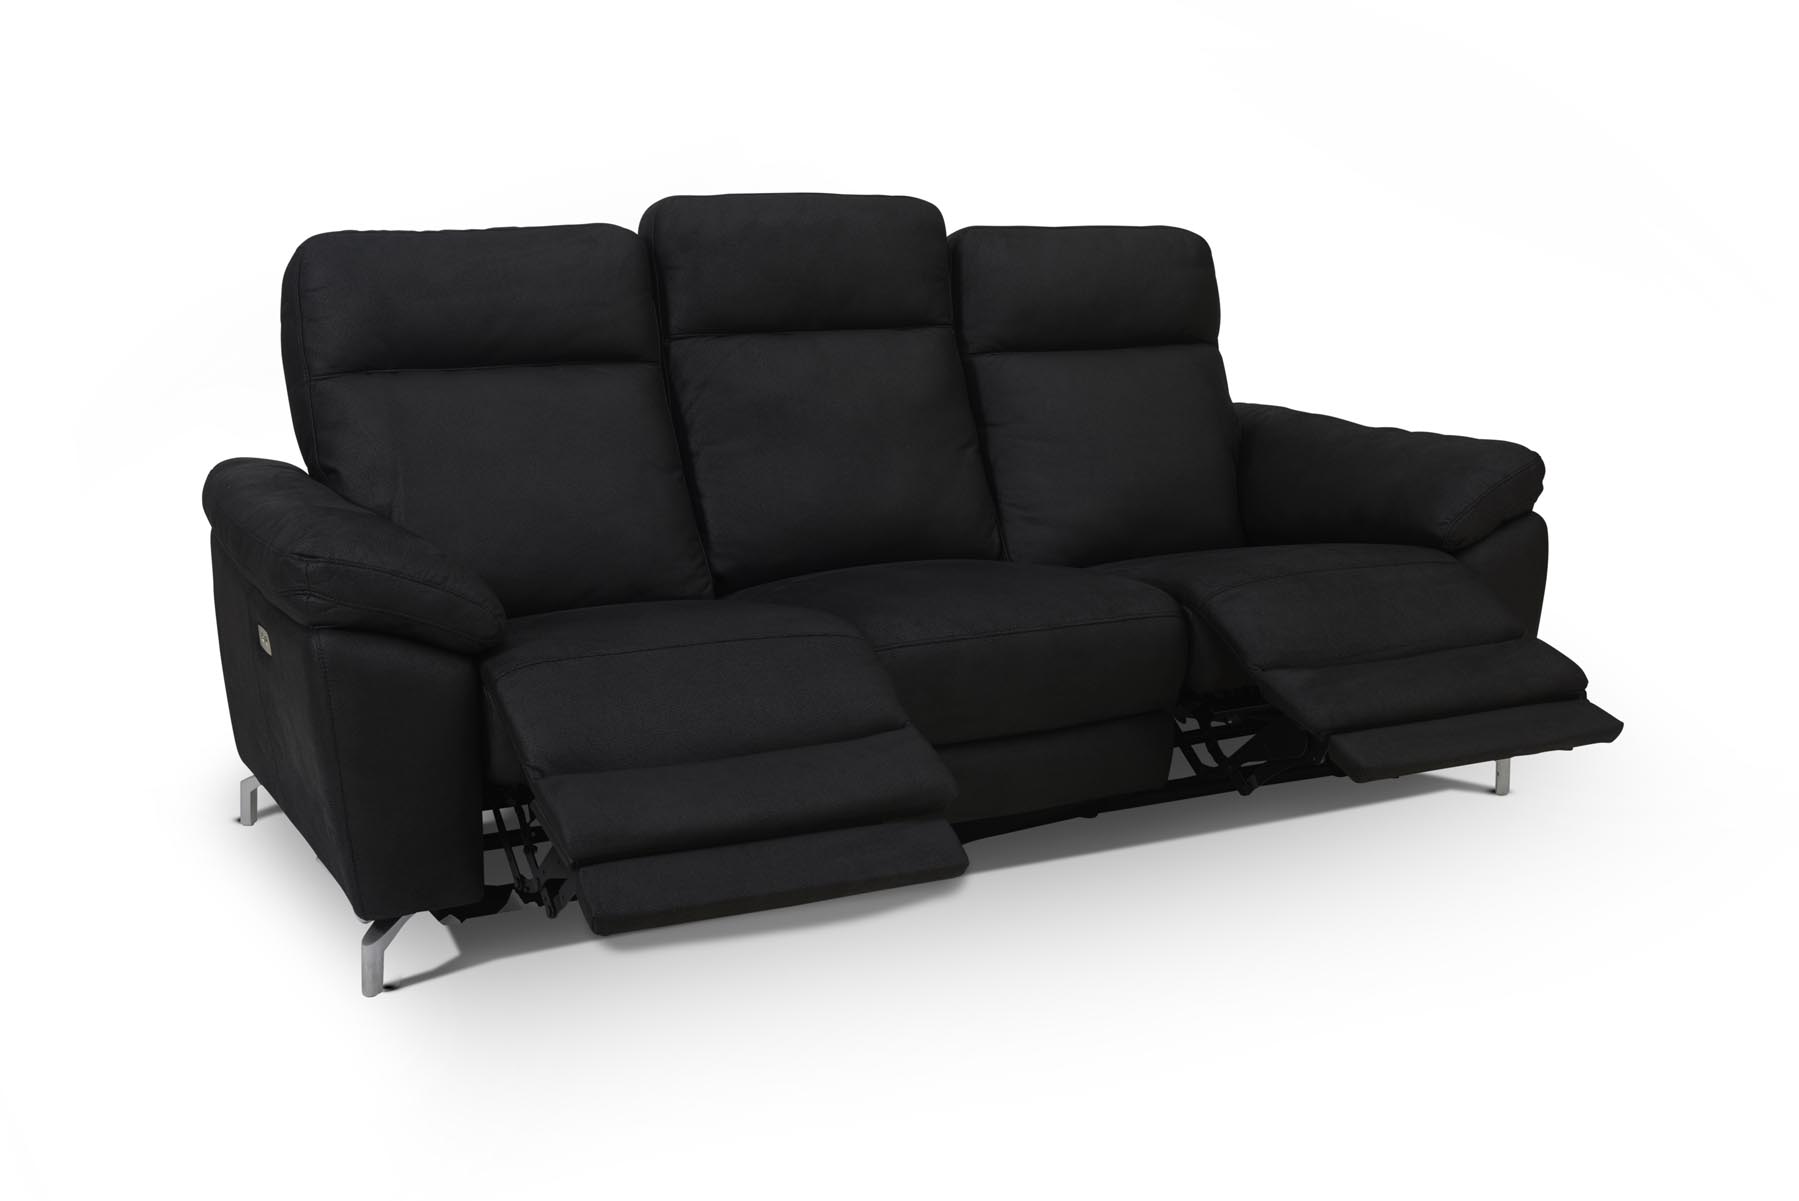 Selma 3 personers sofa med elevations sæder til nakke, ryg og ben i sort microfiber